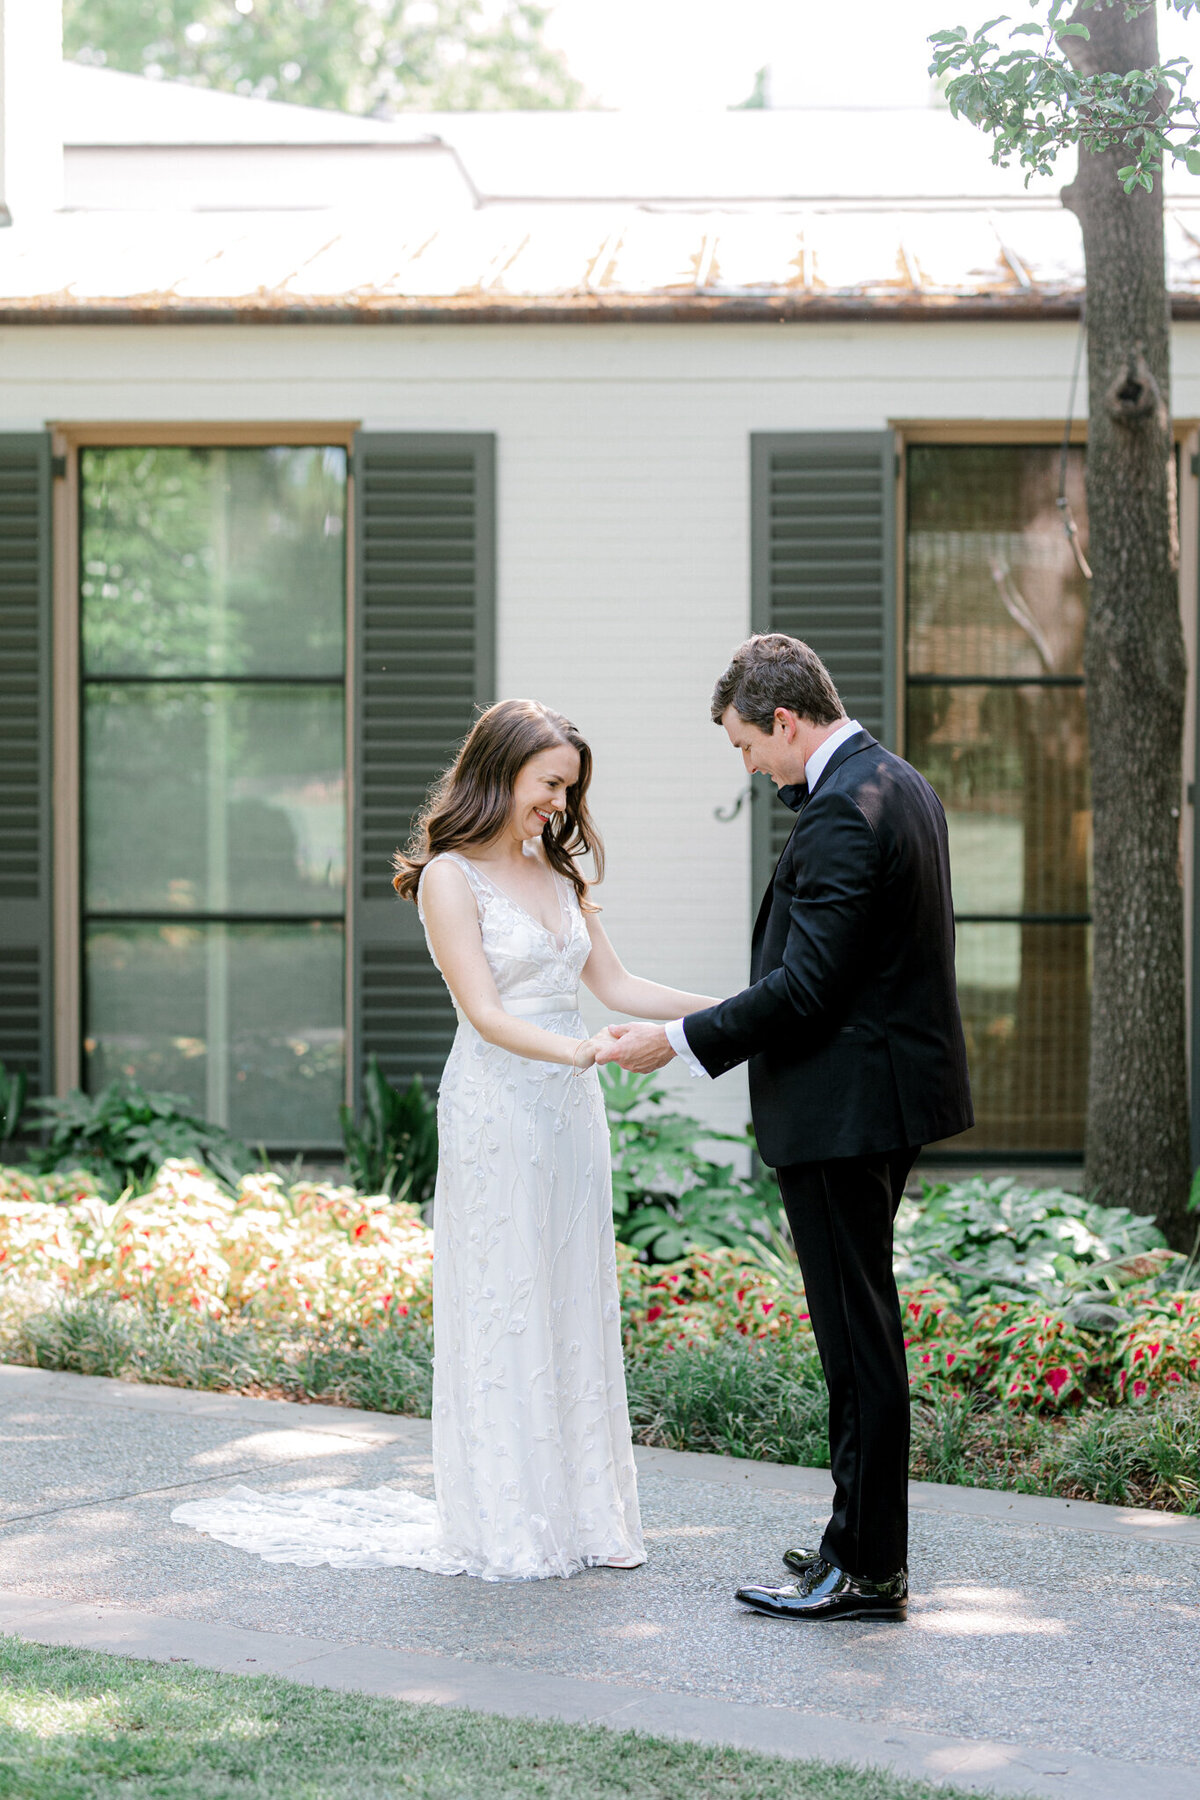 Gena & Matt's Wedding at the Dallas Arboretum | Dallas Wedding Photographer | Sami Kathryn Photography-69